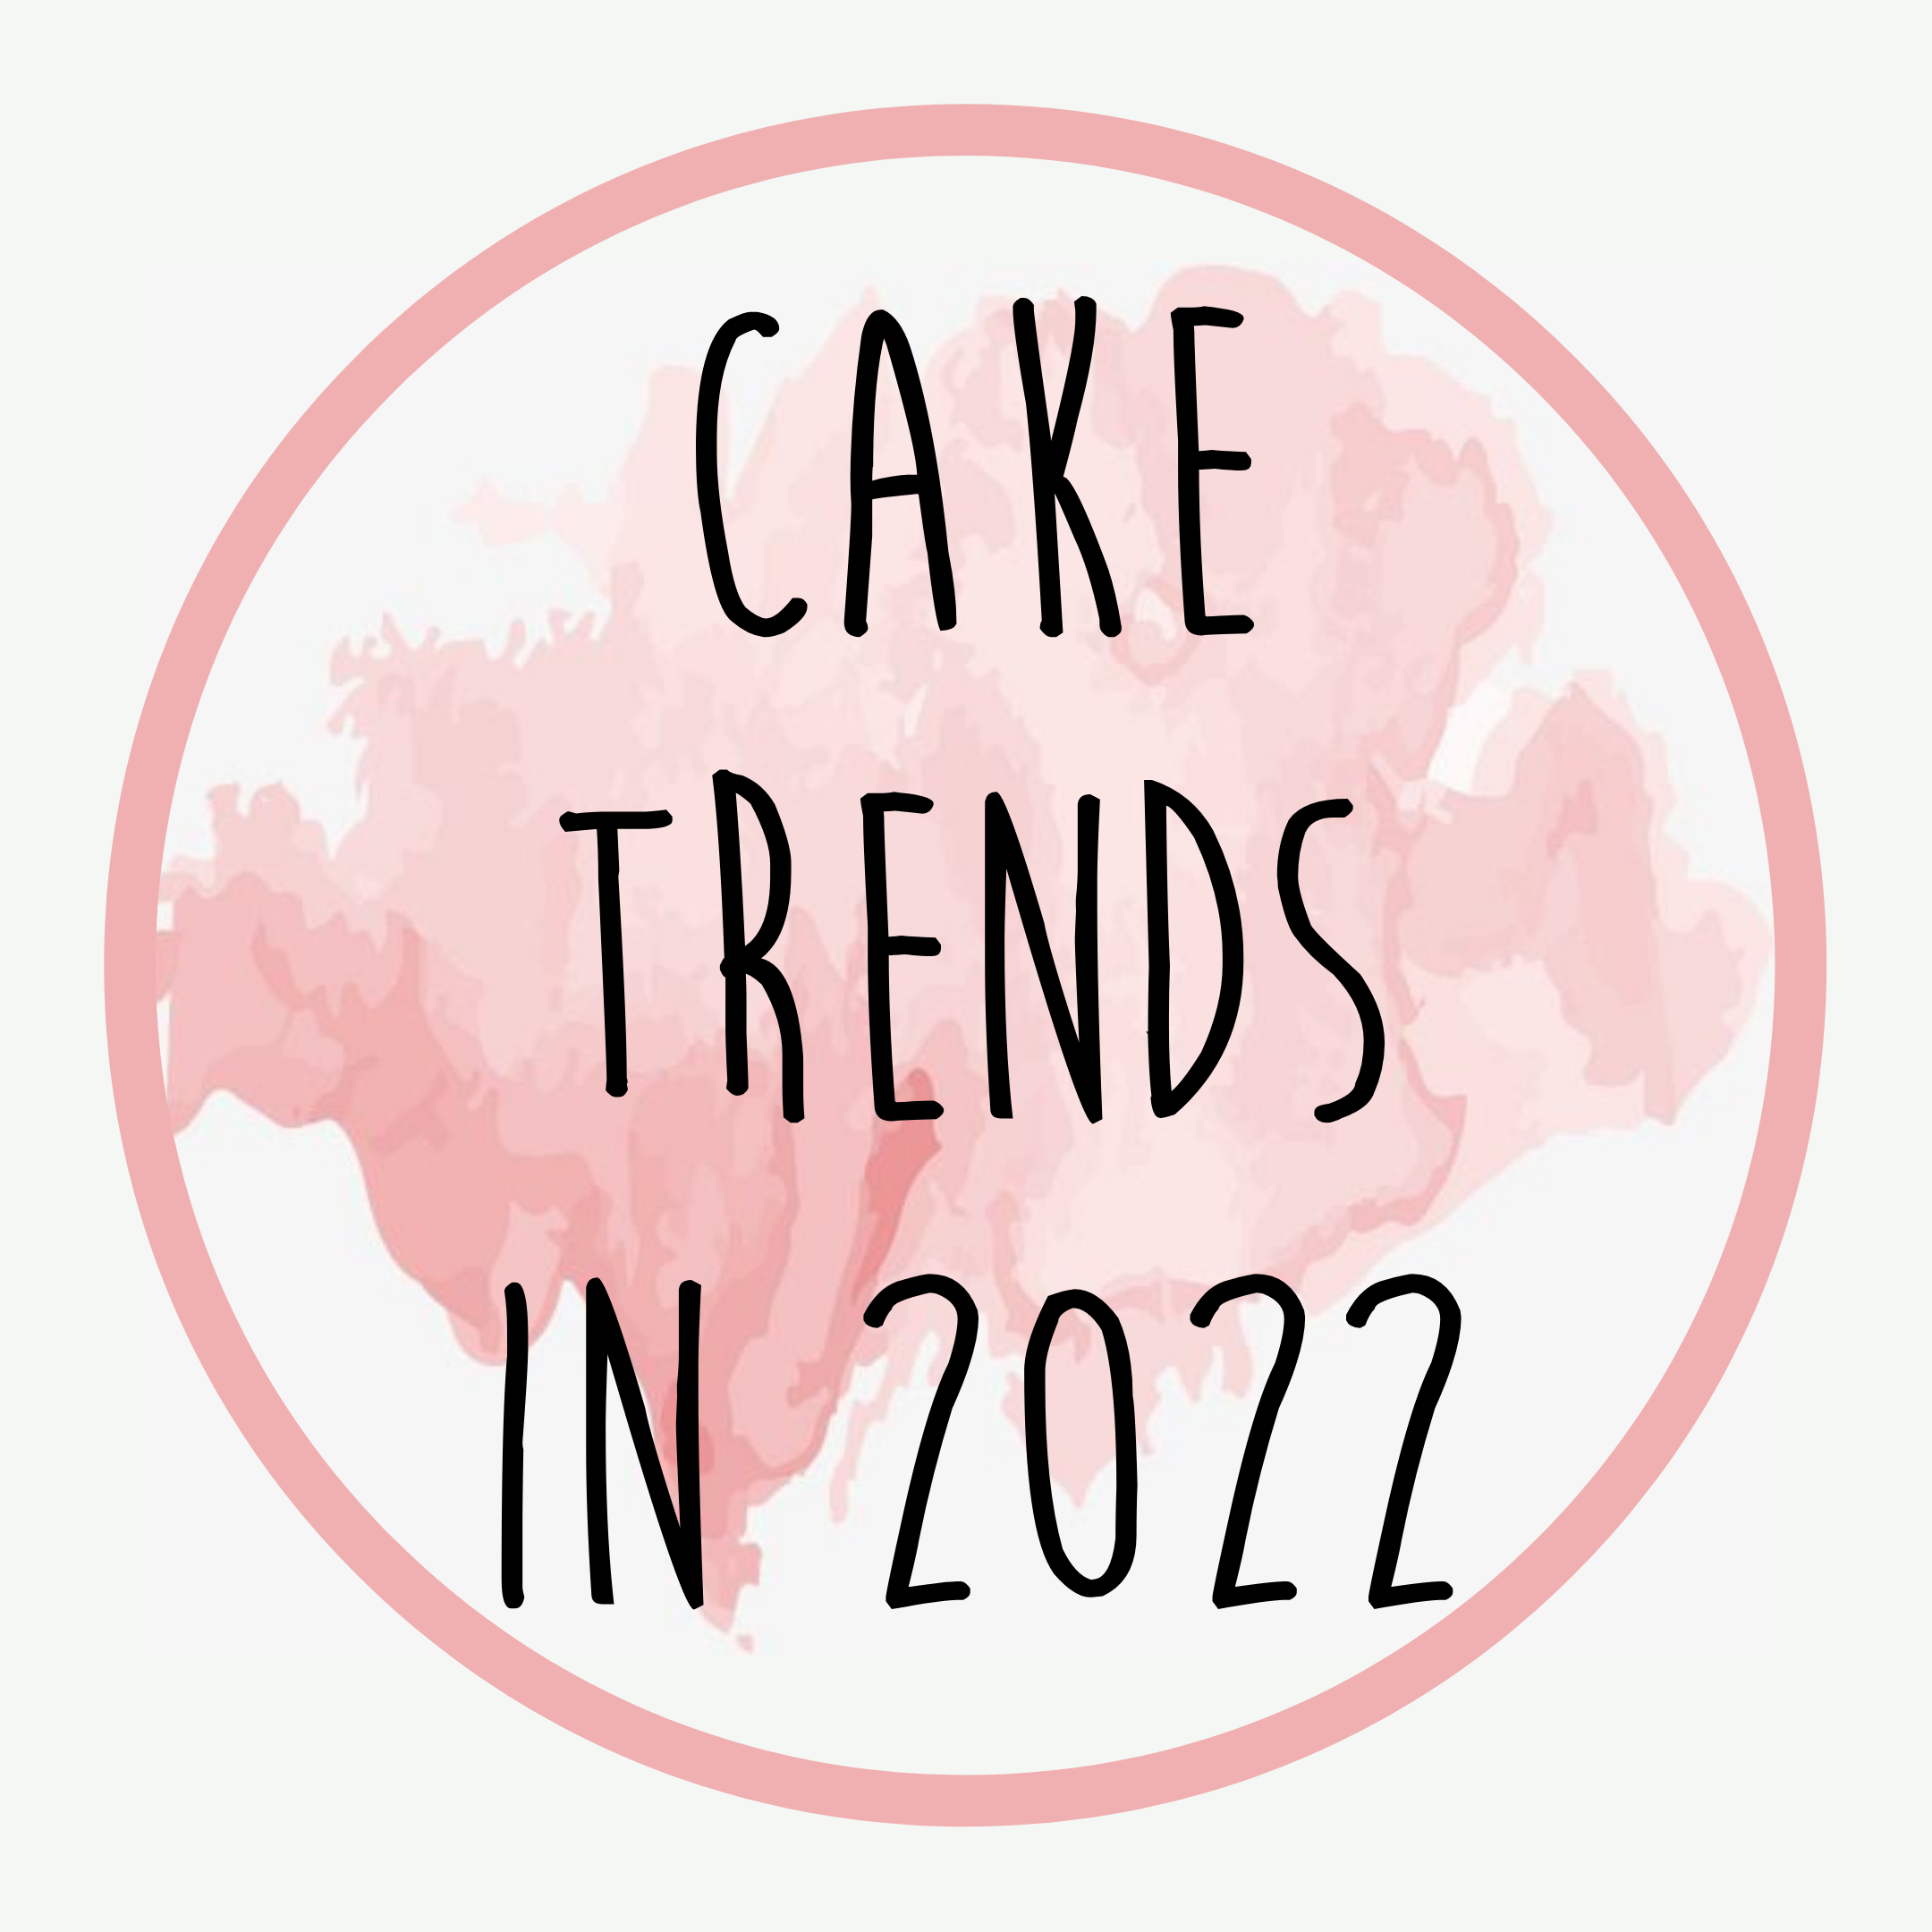 Cake trends in 2022